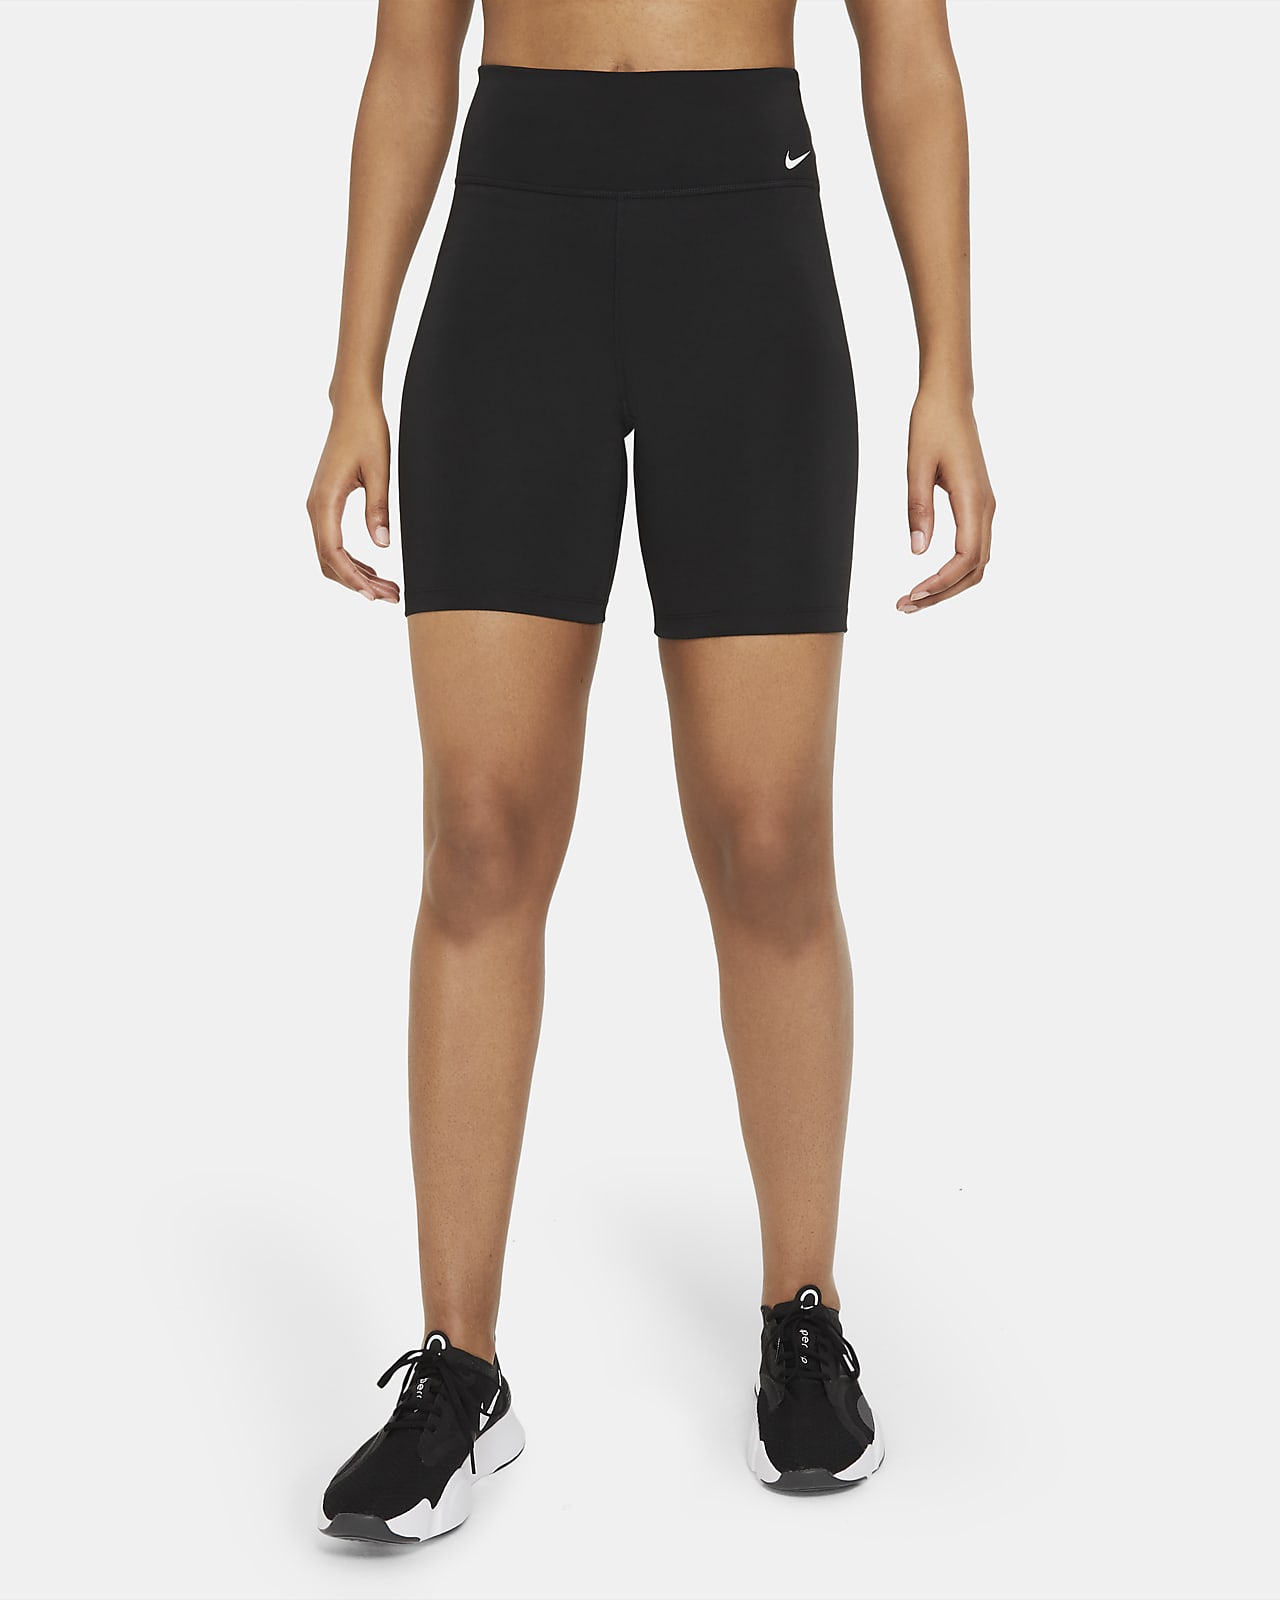 Nike One Malles ciclistes curtes de cintura mitjana de 18 cm - Dona